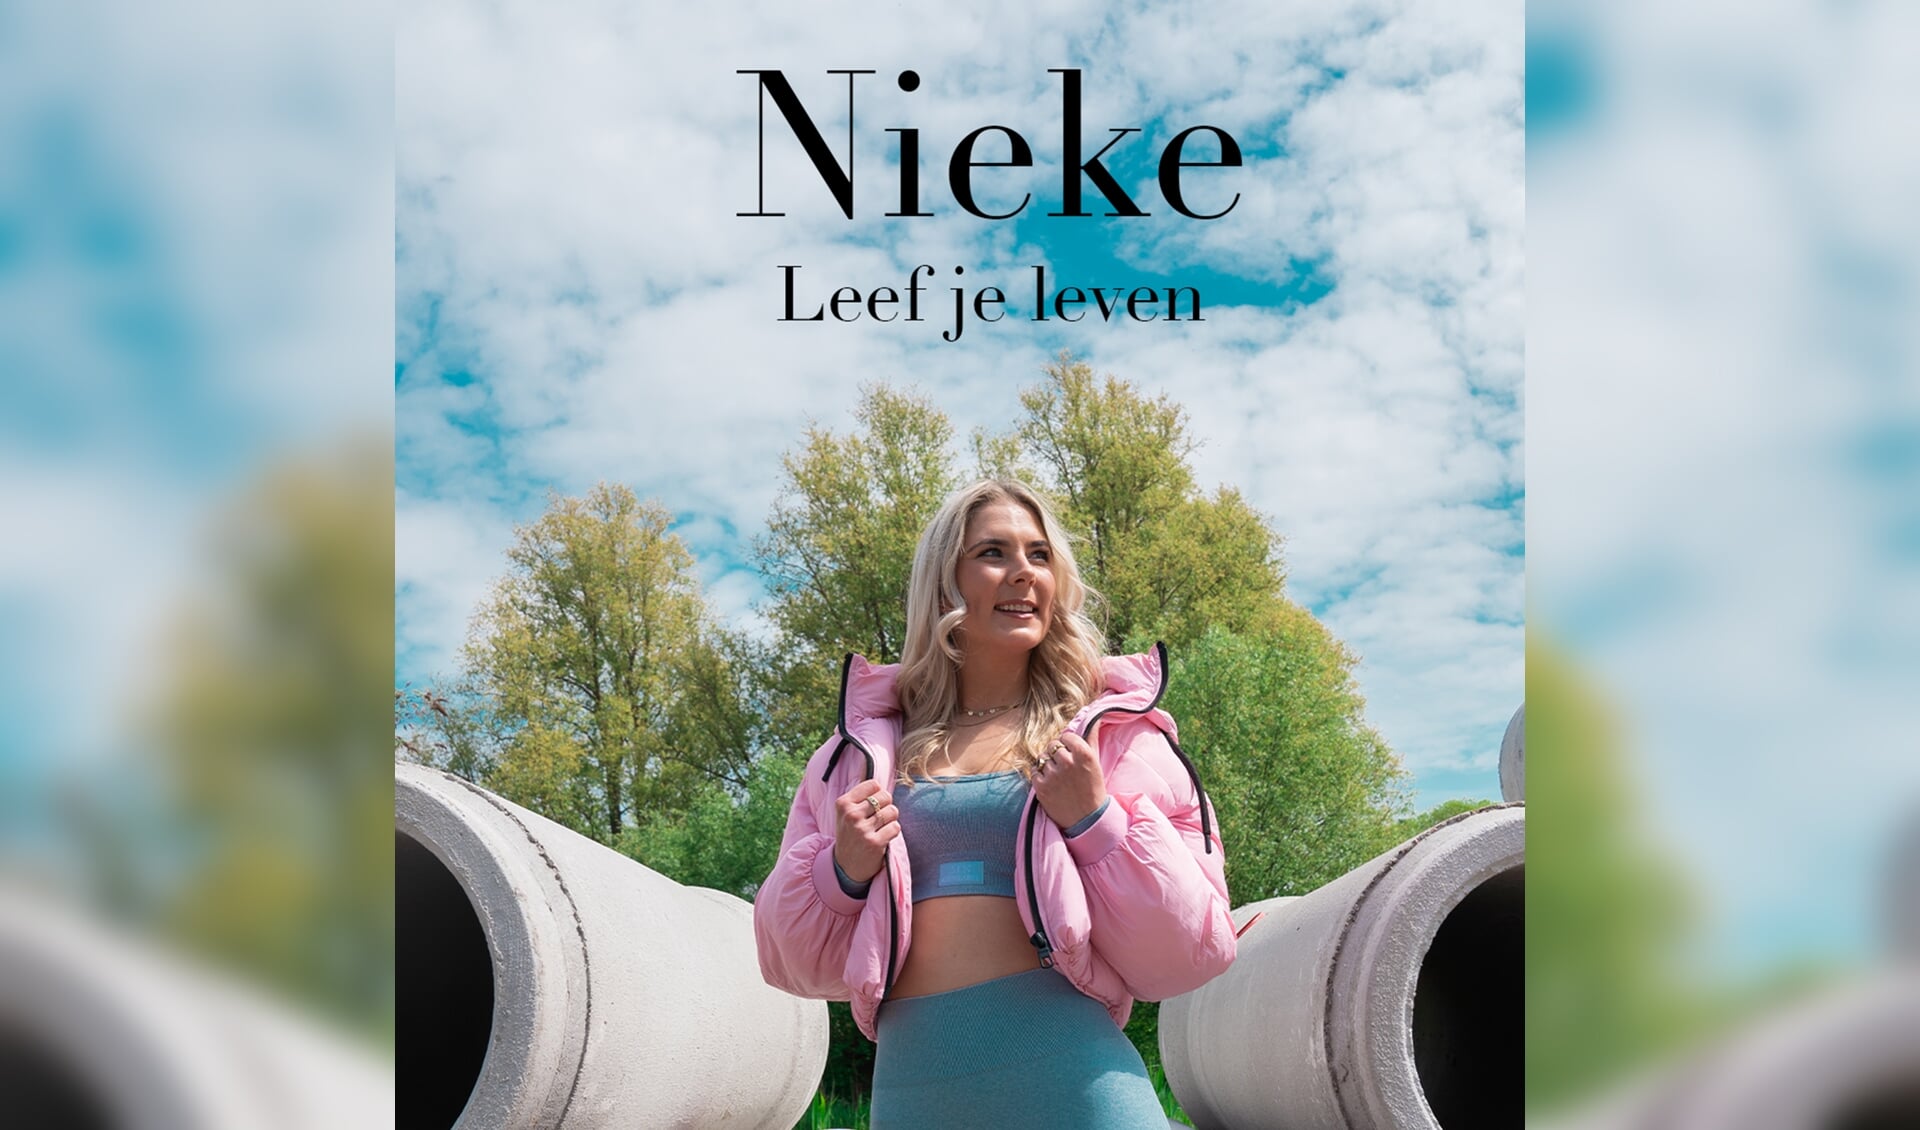 Vlaardingse Nieke brengt tweede single uit.